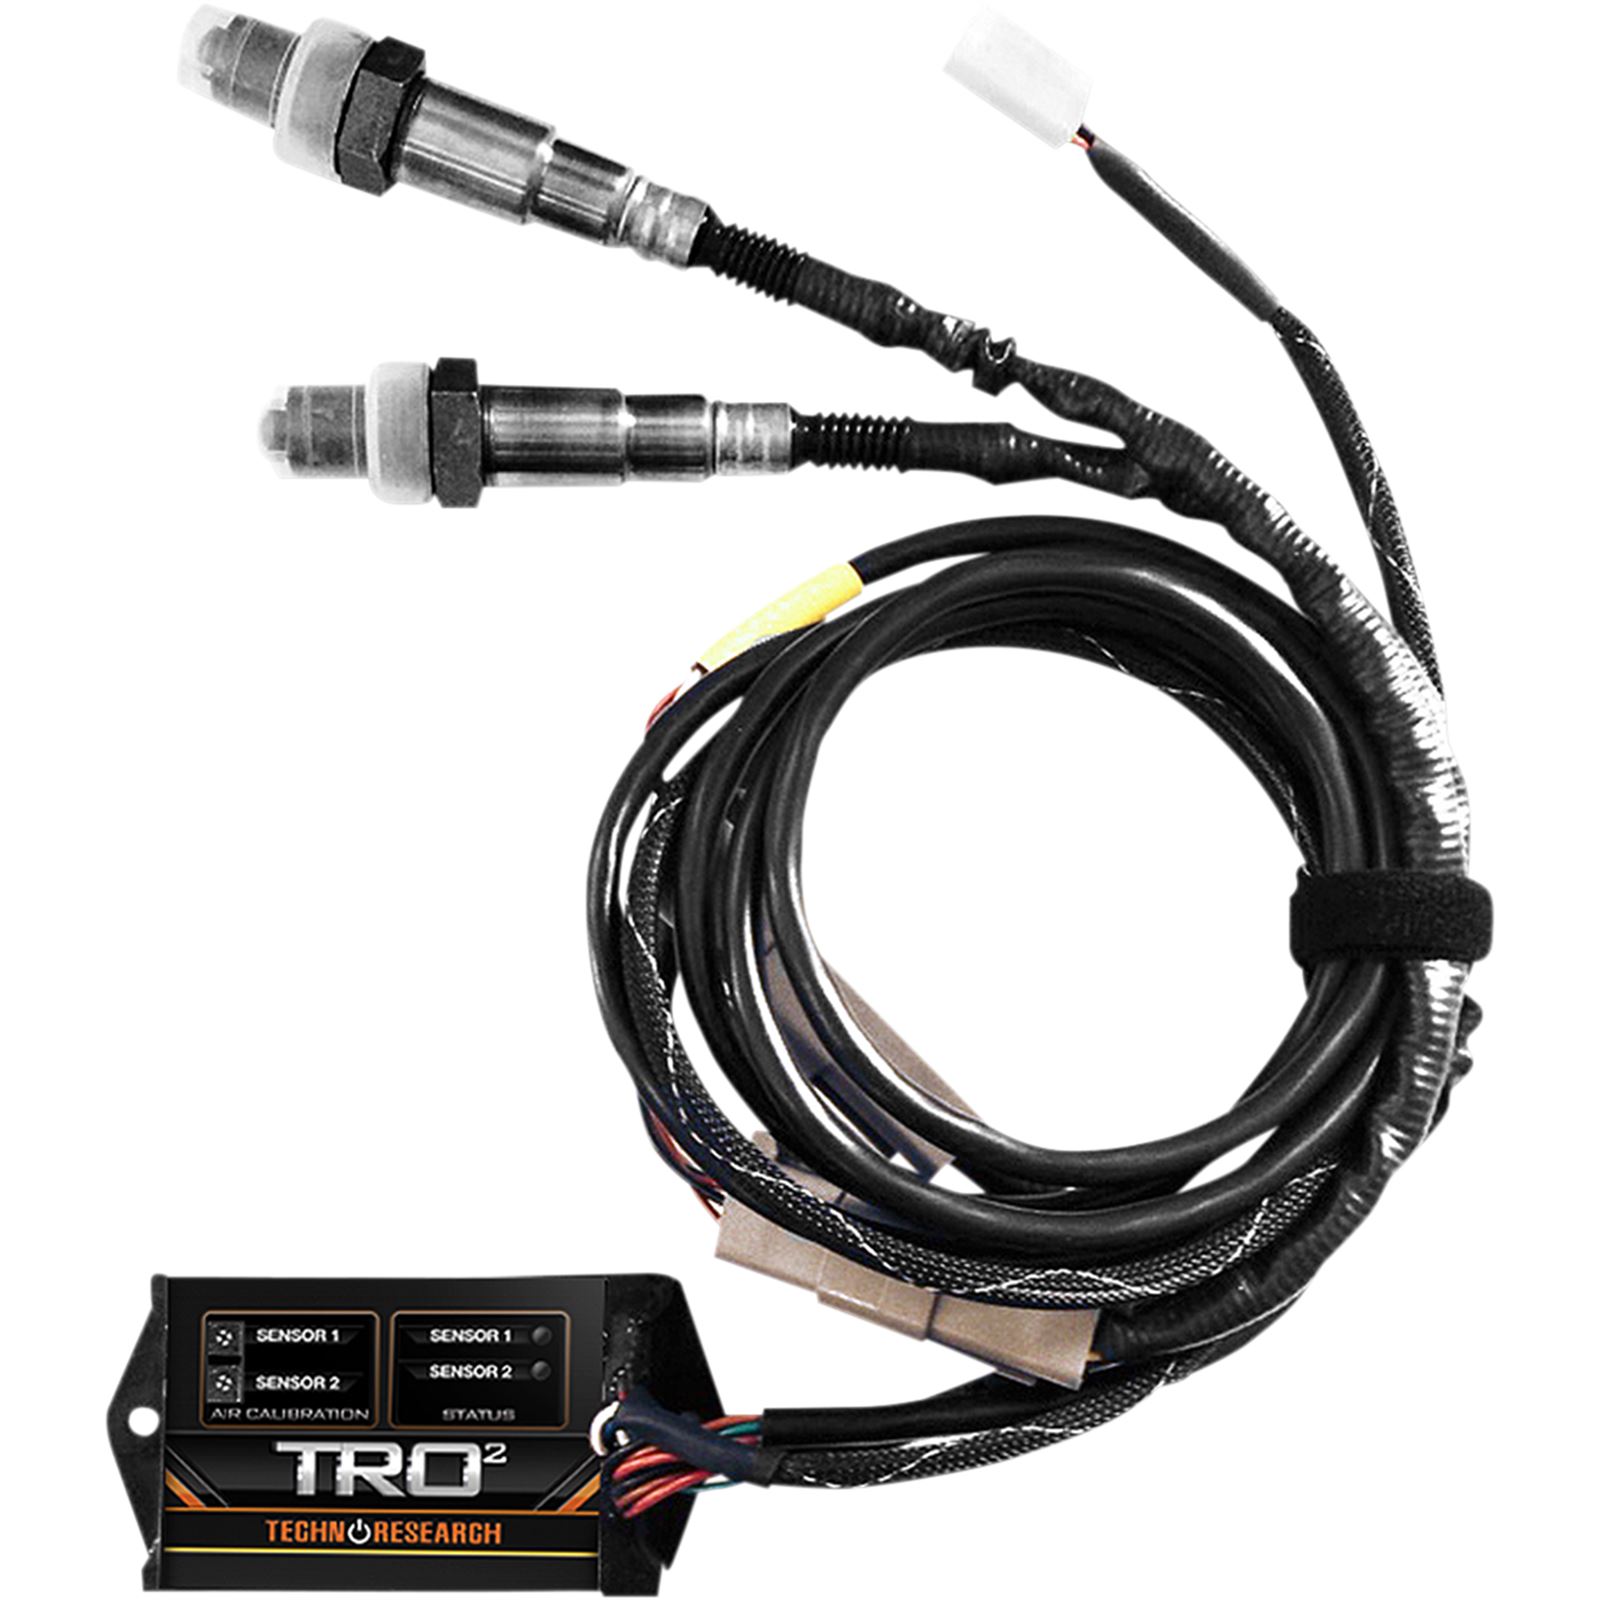 Technoresearch TRO2 Sensor System